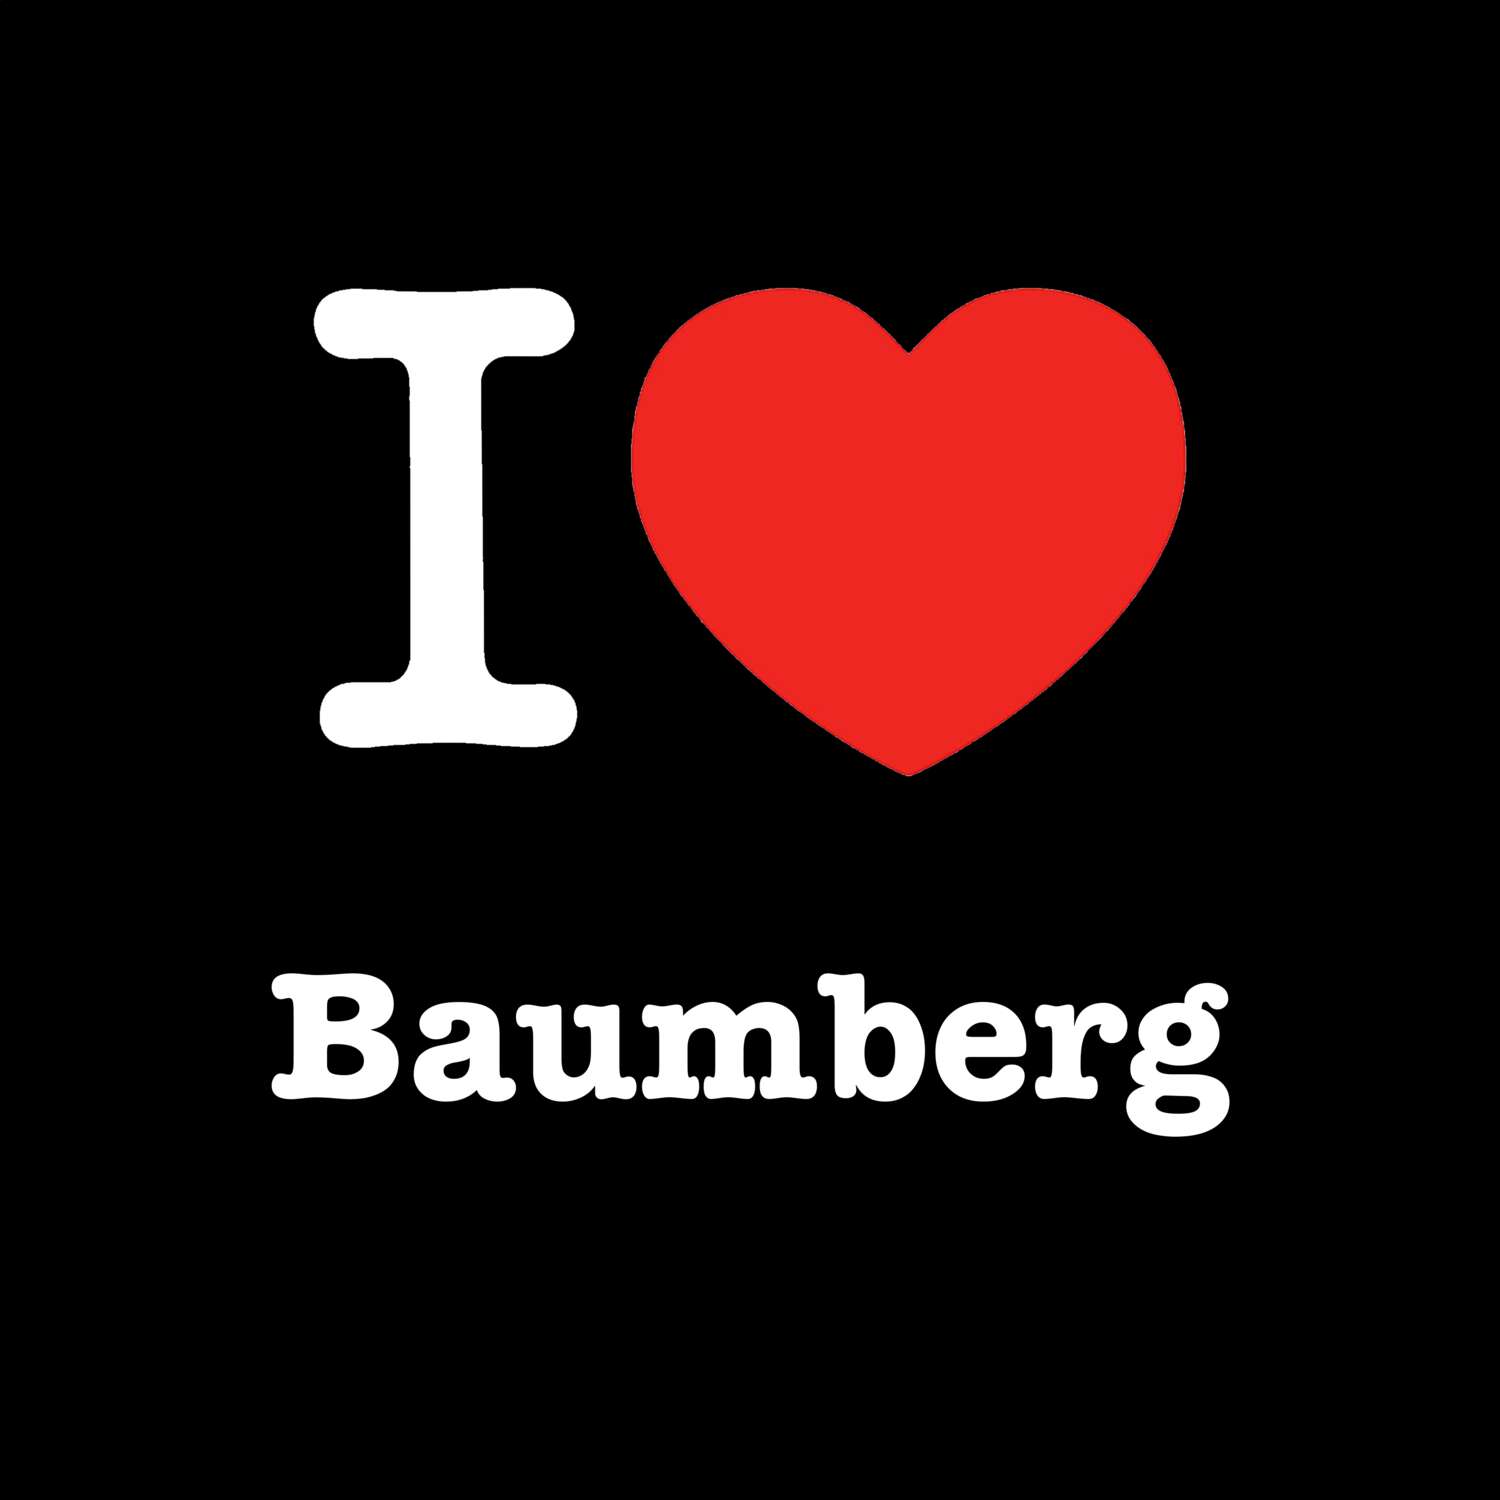 Baumberg T-Shirt »I love«